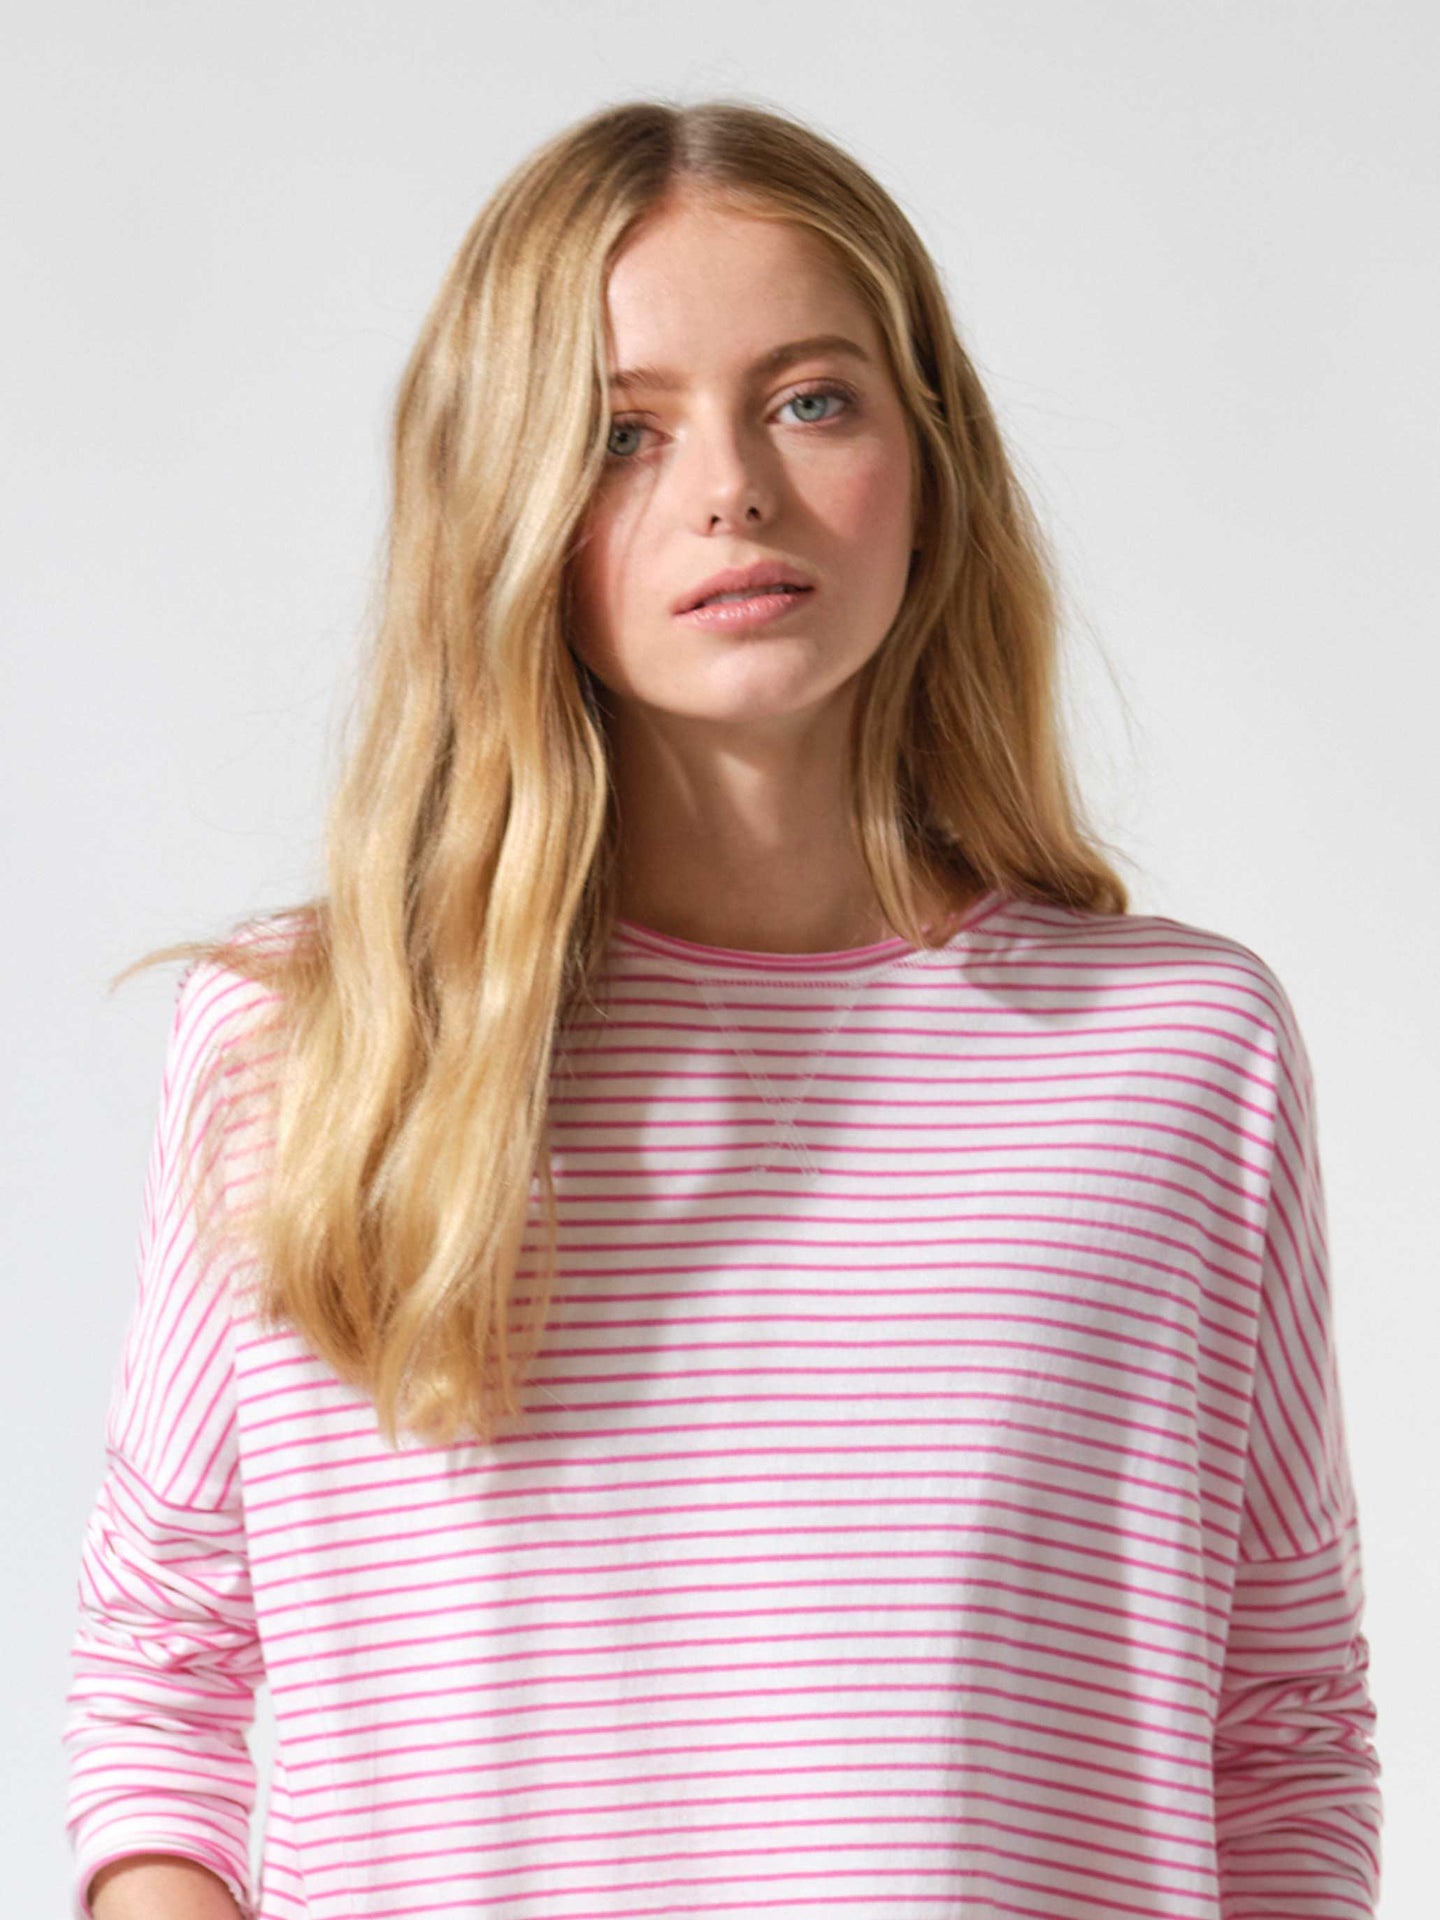 Faye cotton oversized t-shirt - Pink / White